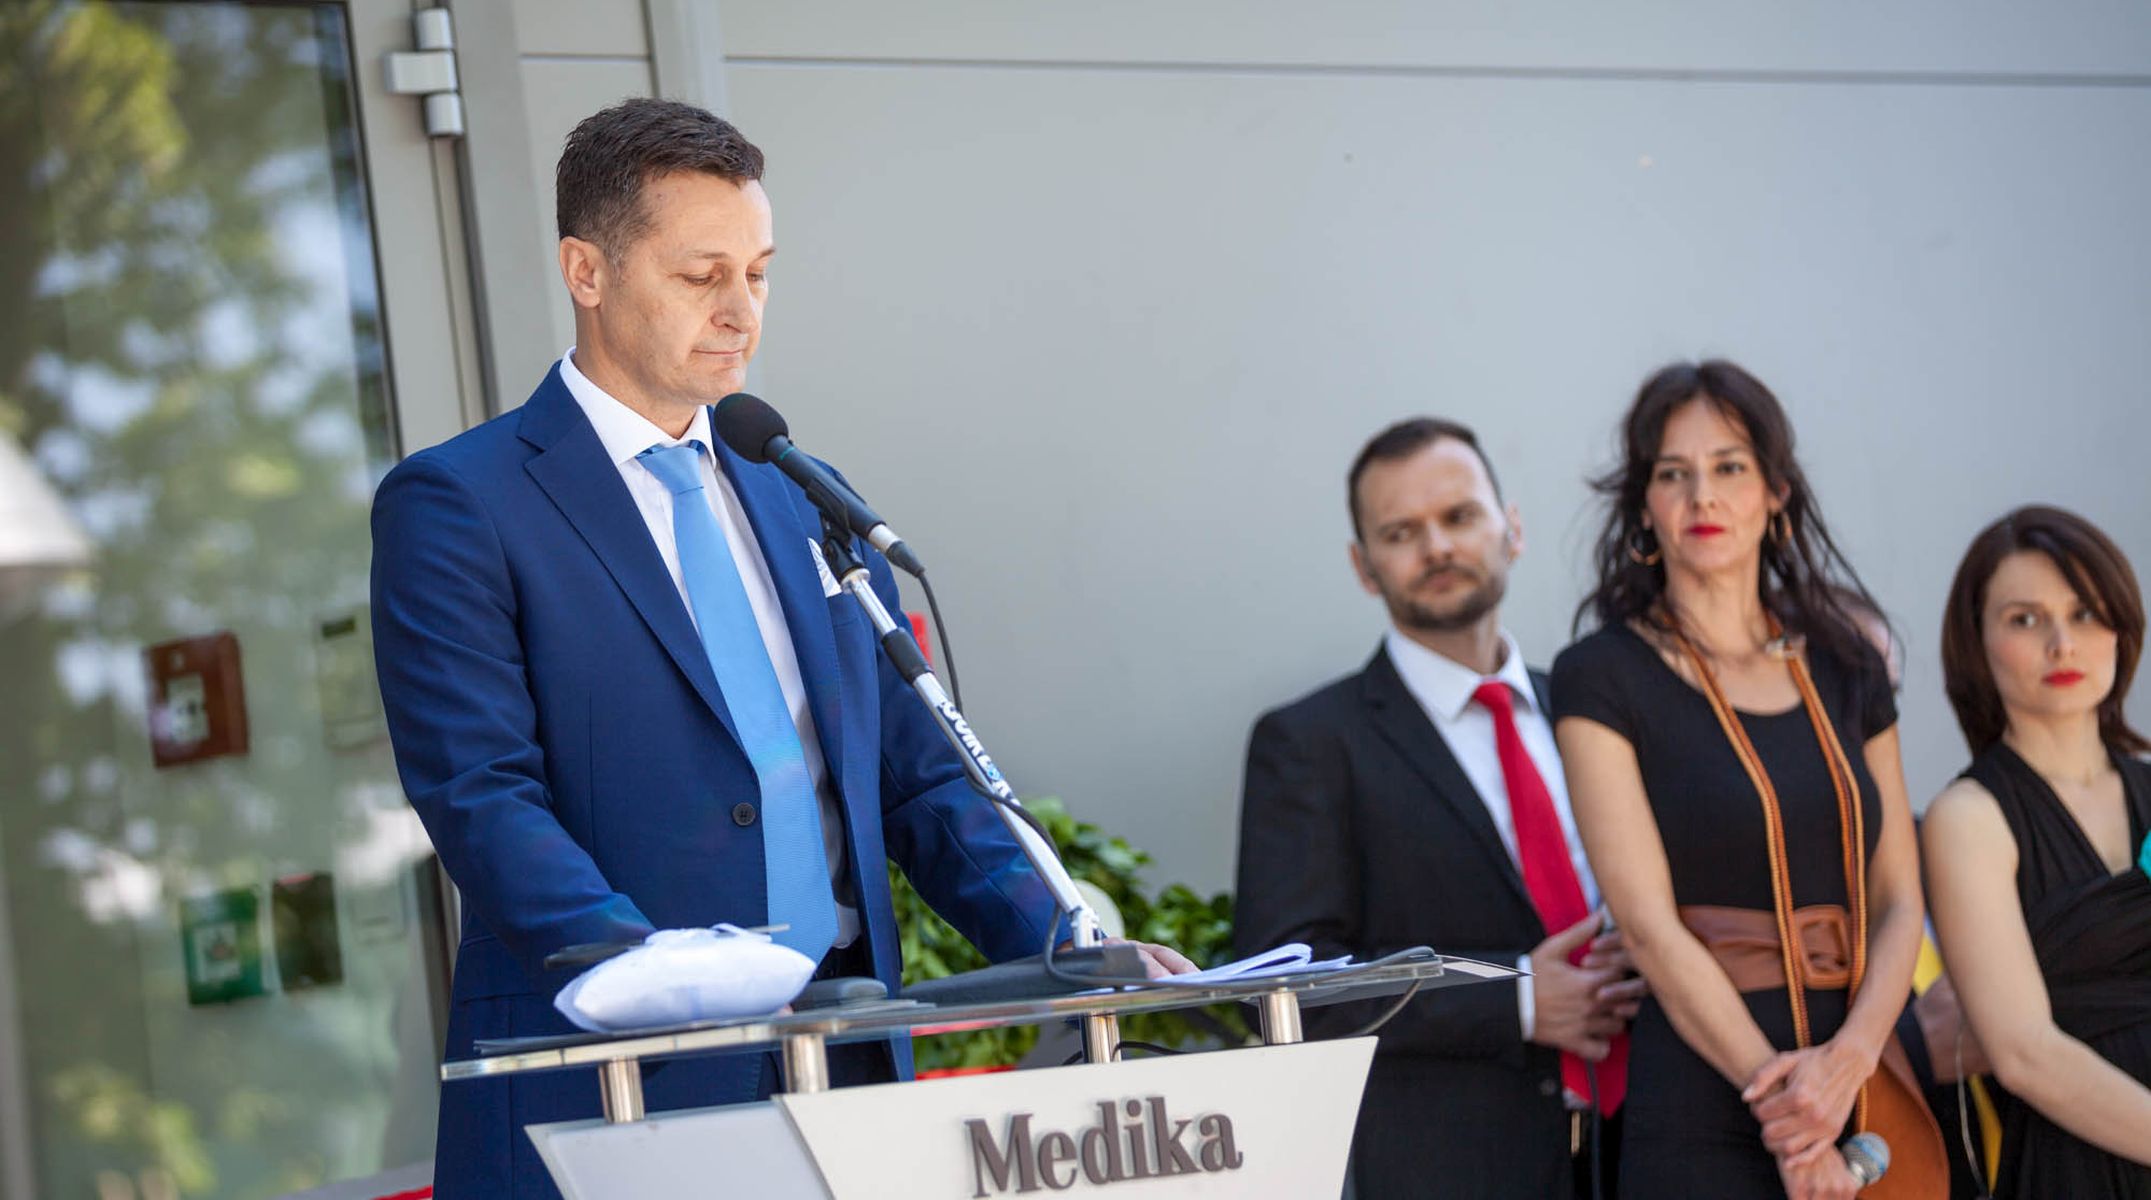 Osijek, 12.5.2015 - Veledrogerija Medika otvorila je u utorak u Osijeku novi poslovno-distribucijski centar, u èiju je izgradnju i opremanje uloila vie od 30 milijuna kuna. Na slici direktor tvrtke Jasminko Herceg.
foto HINA/ Komunikacijski ured/ ua